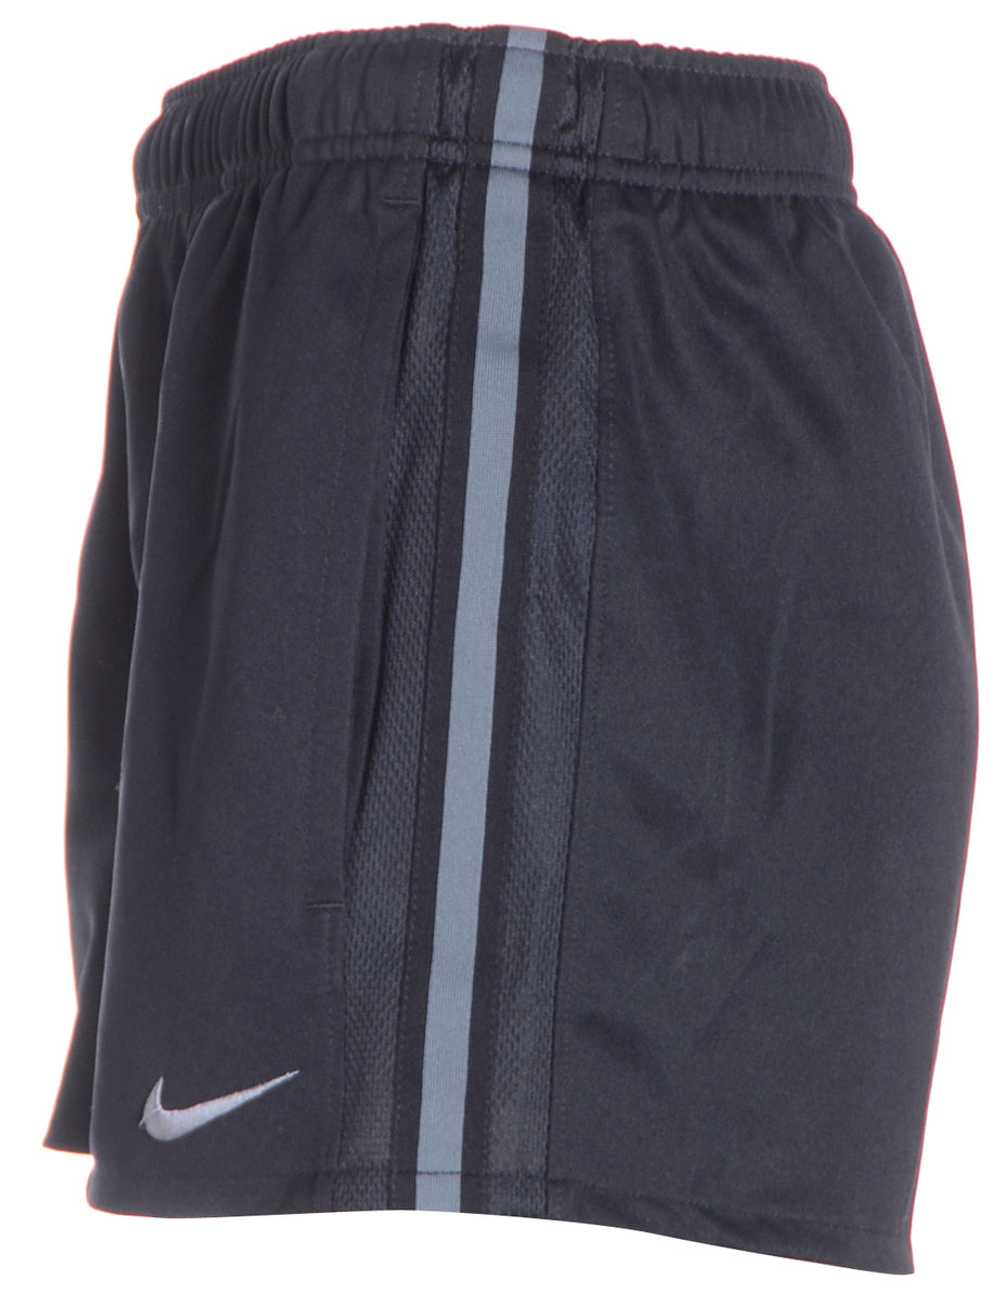 Reworked Nike Sports Shorts - image 1